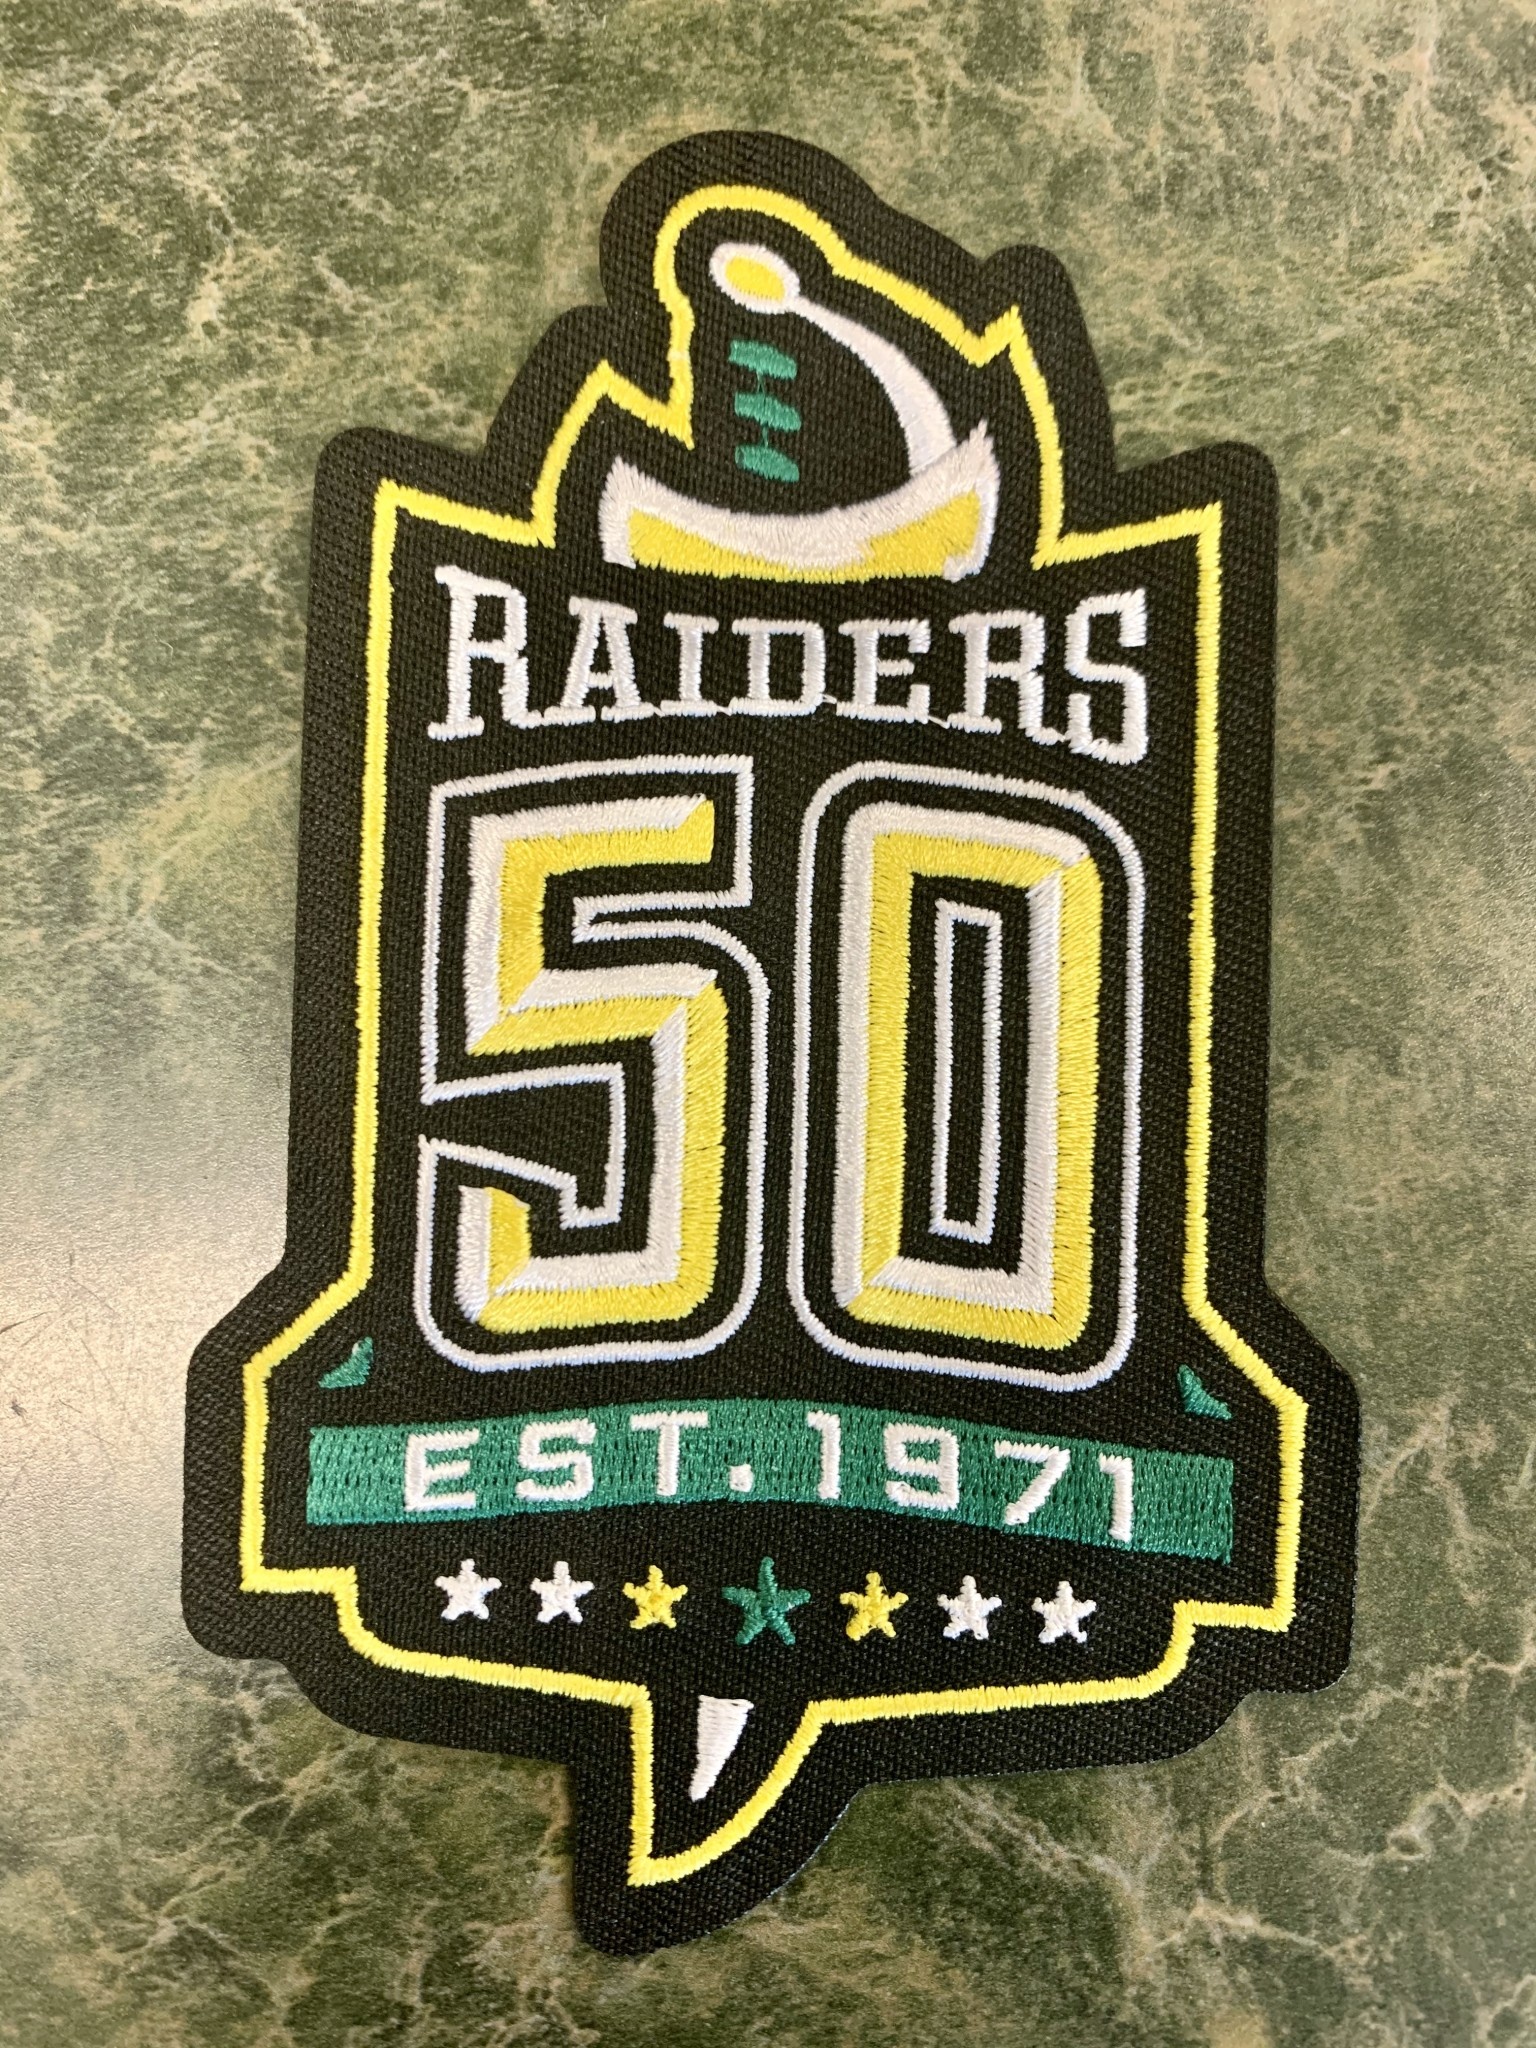 Raiders 50th Season Logo Patch - Vintage Color